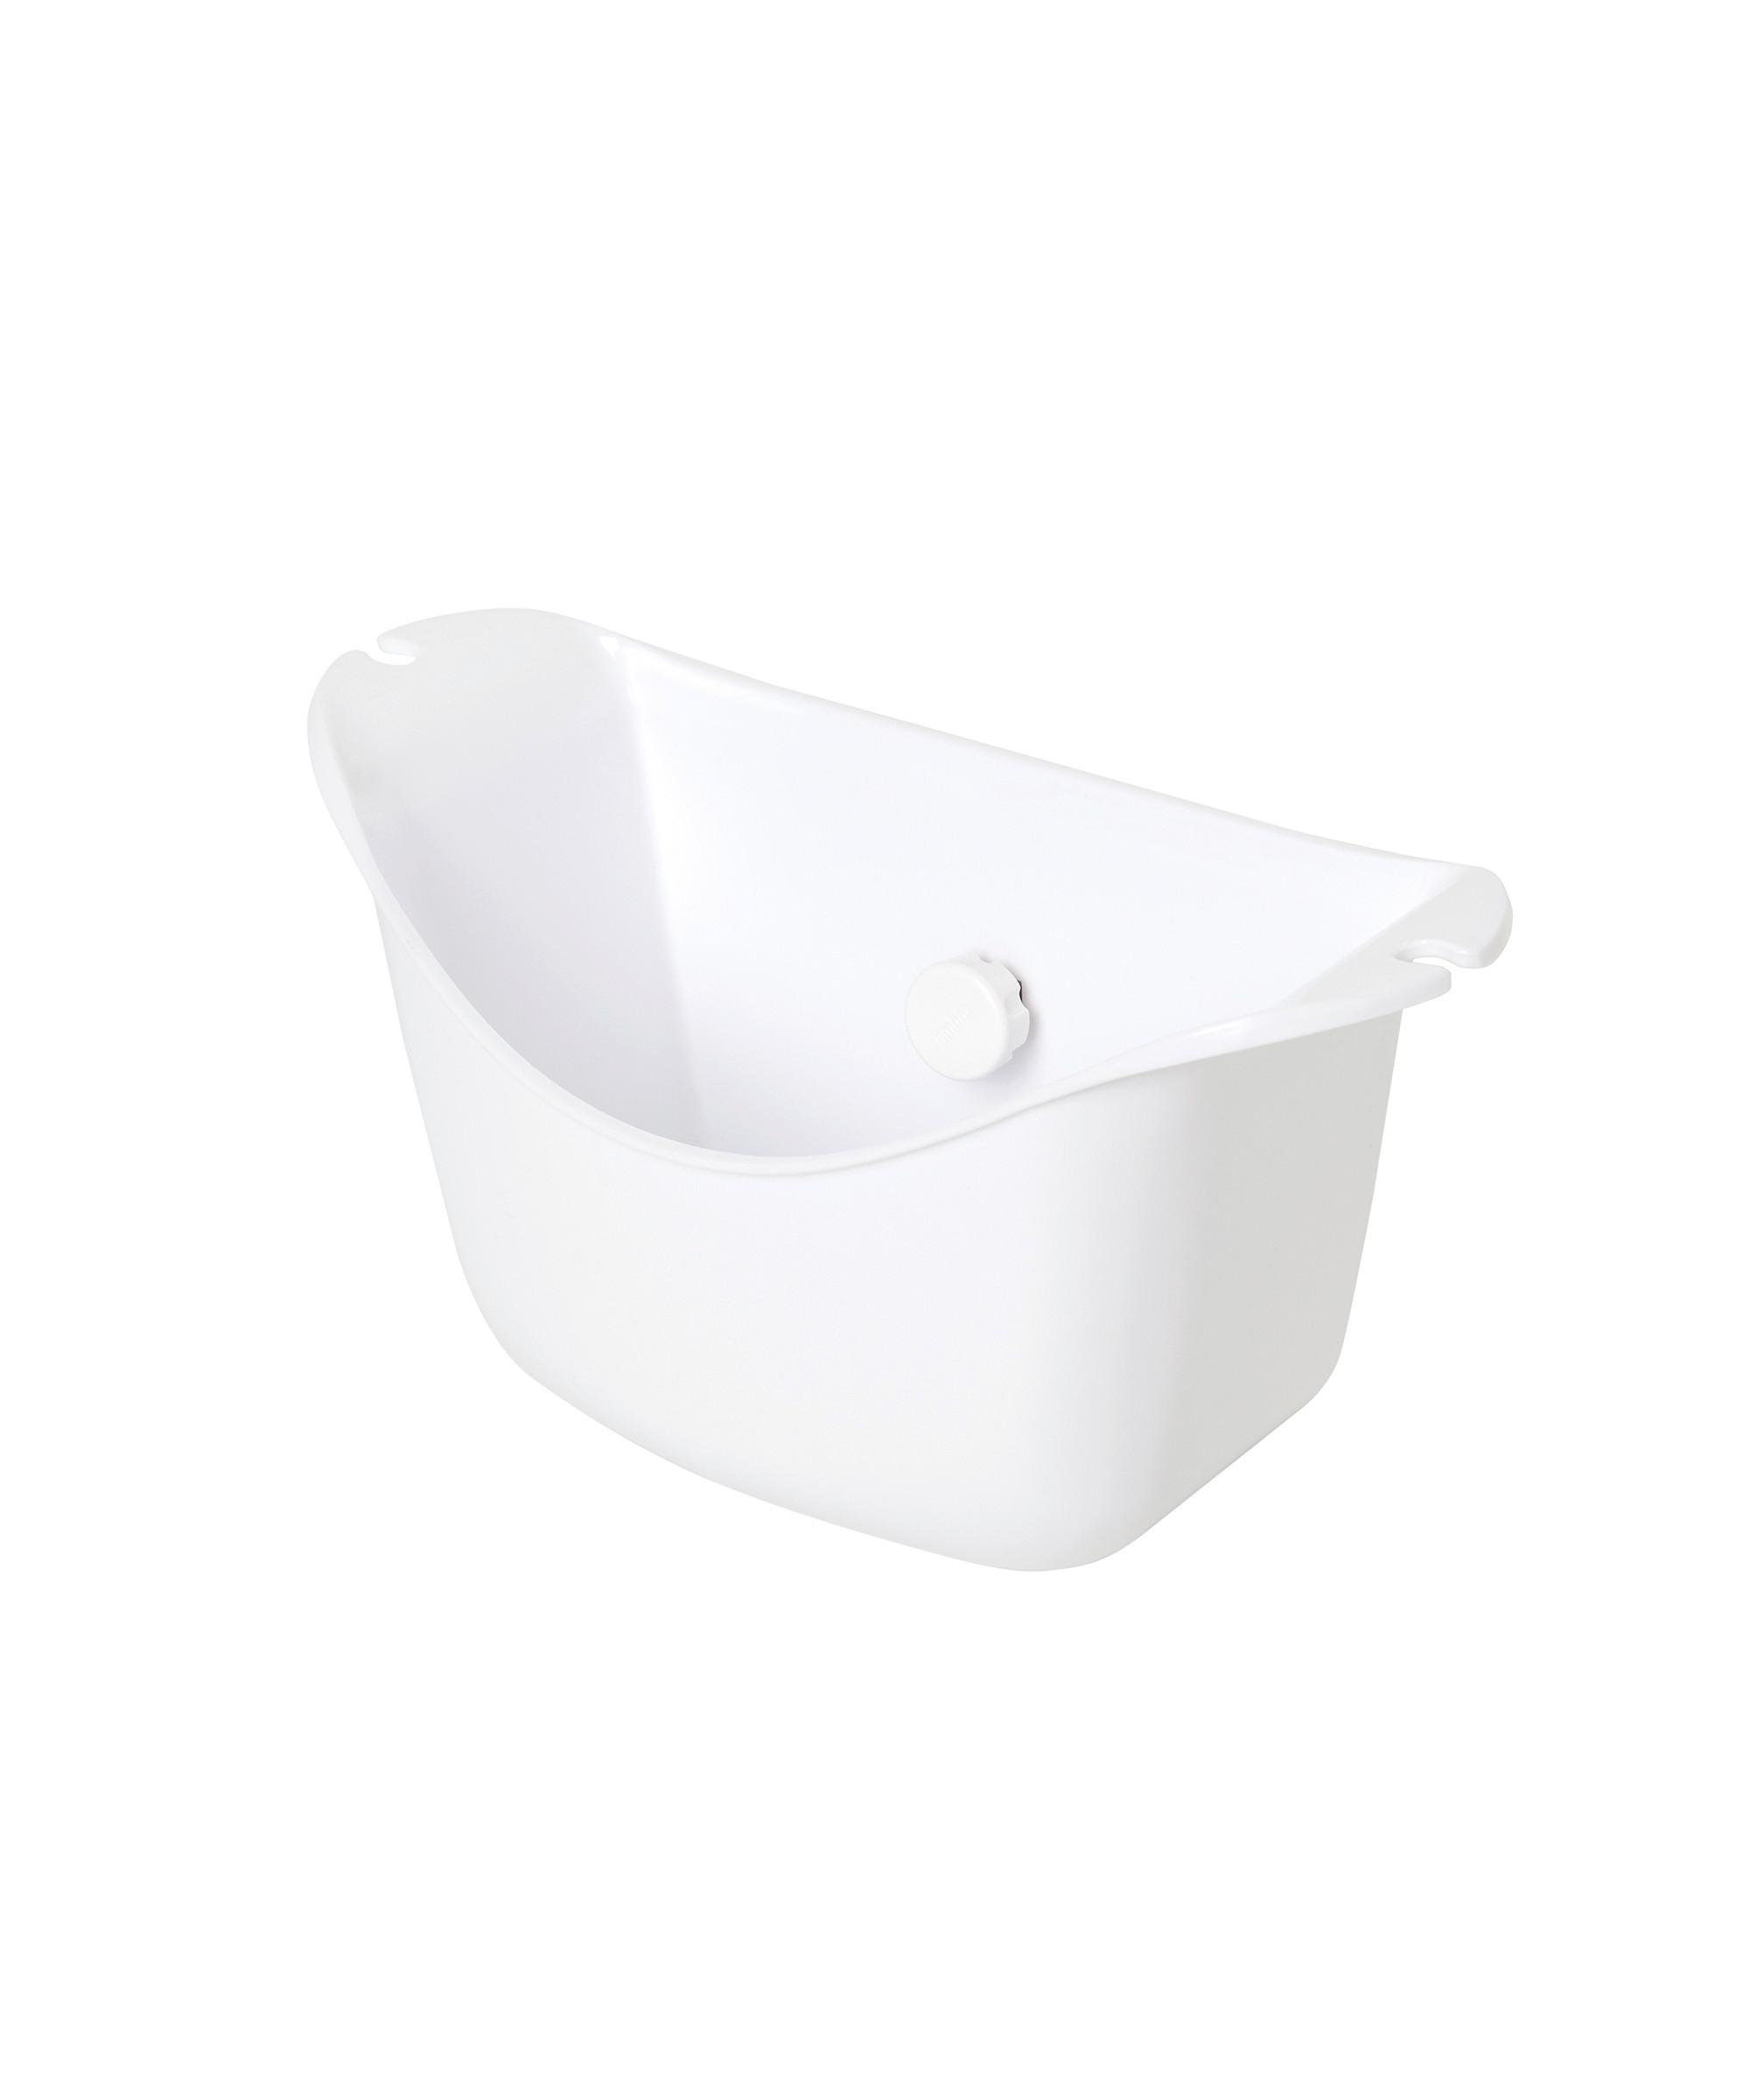 Duschkorb Easy aus Kunststoff - Weiß, MODERN, Kunststoff (29/14/15,6cm) - Premium Living